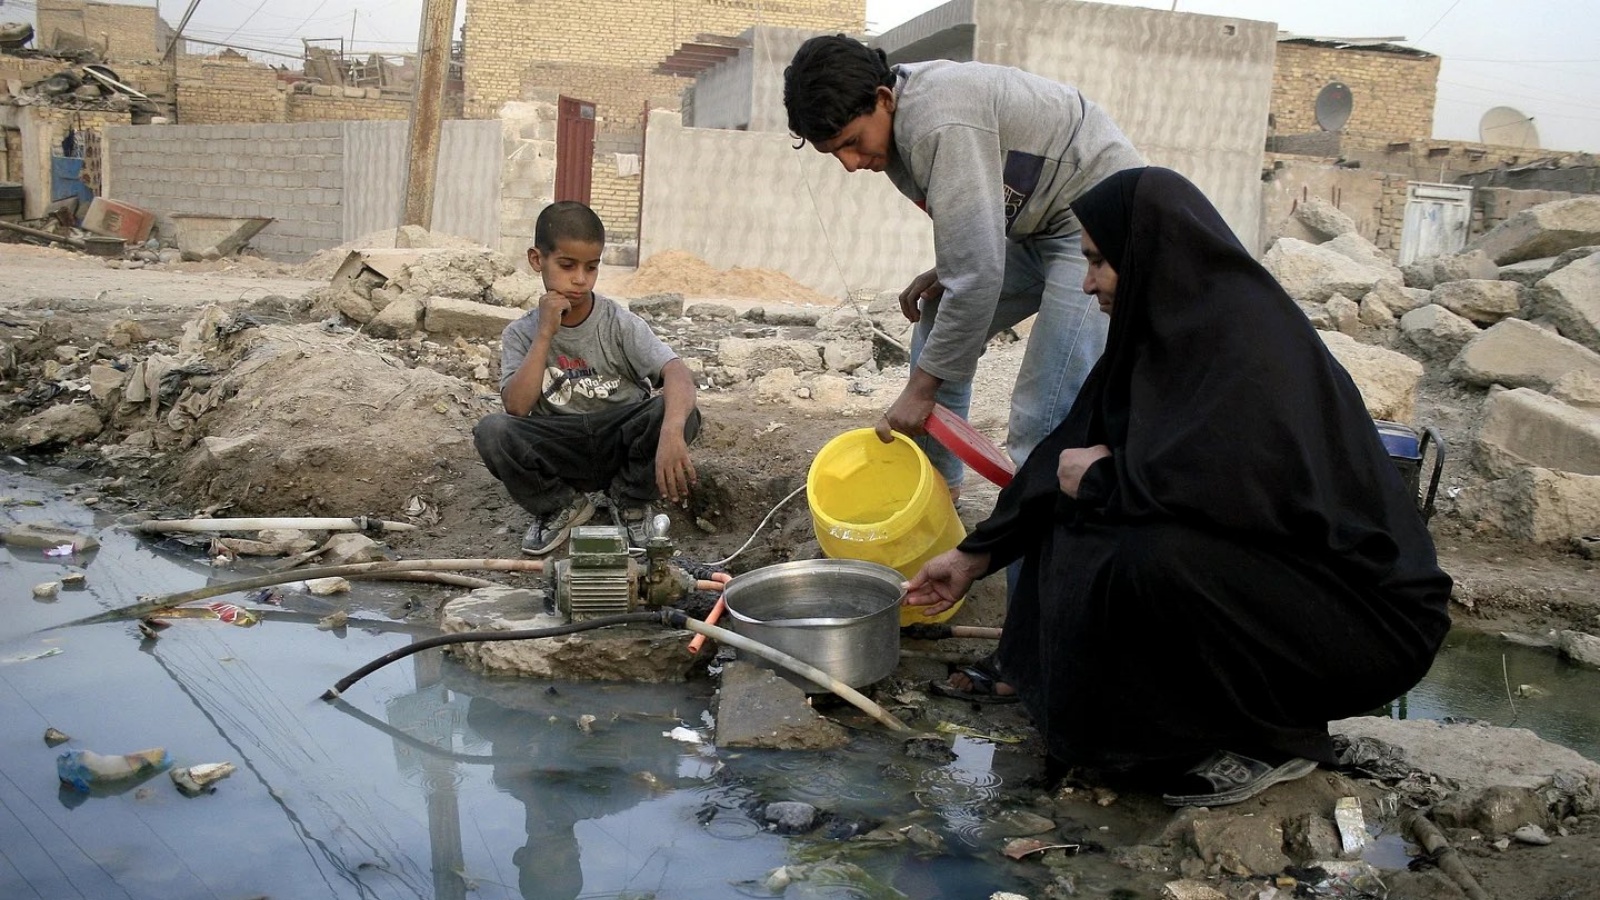 تلوّث مياه الشرب وانعدام شبكات الصرف الصحي يؤدي الى انتشار الأمراض مثل الكوليرا